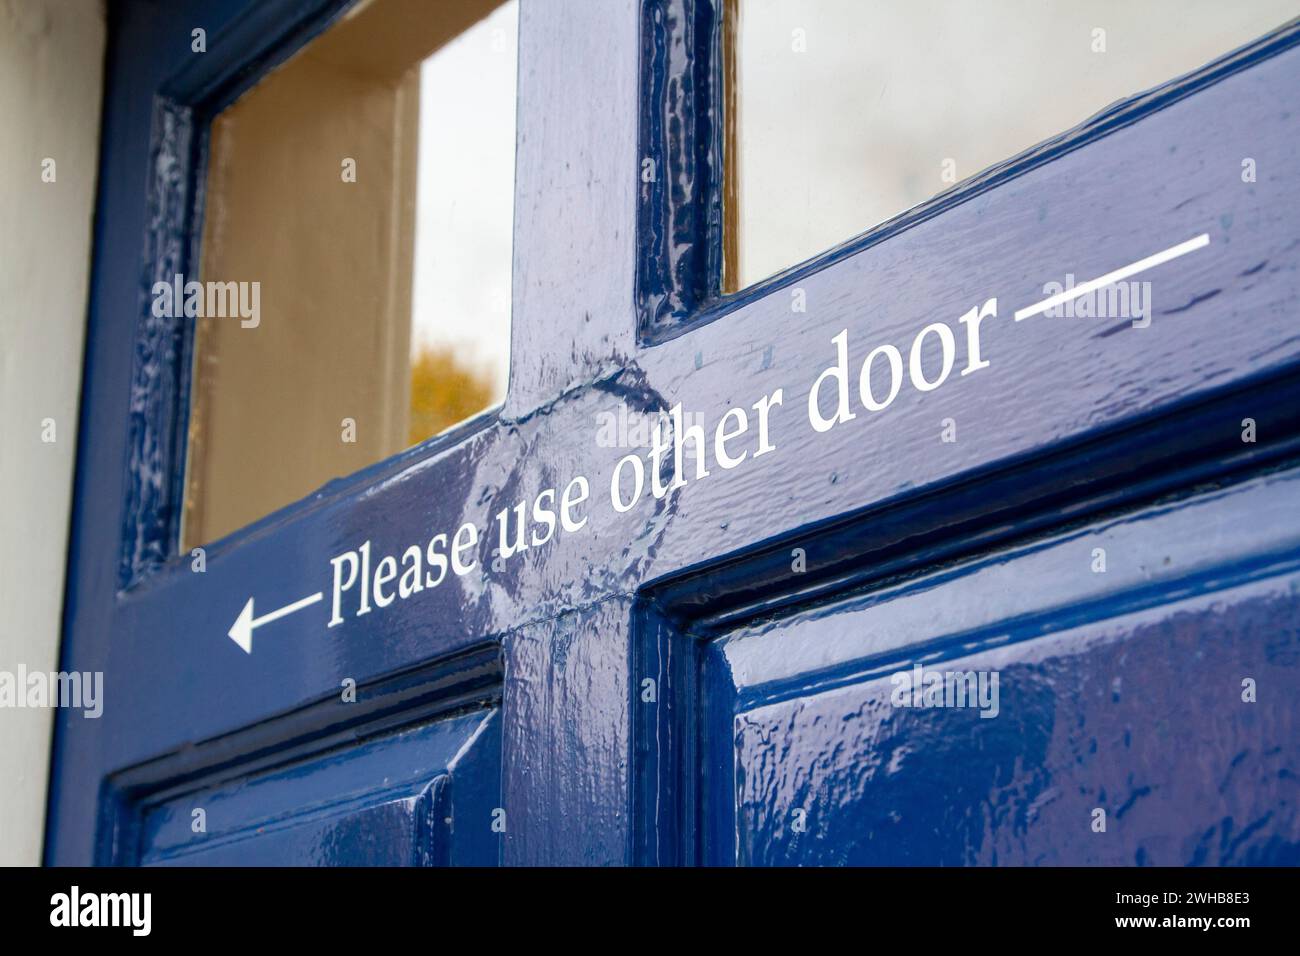 Lo sportello verniciato lucido blu scuro presenta una freccia di direzione e le istruzioni "Please use other door" ... Molto inglese:) Foto Stock